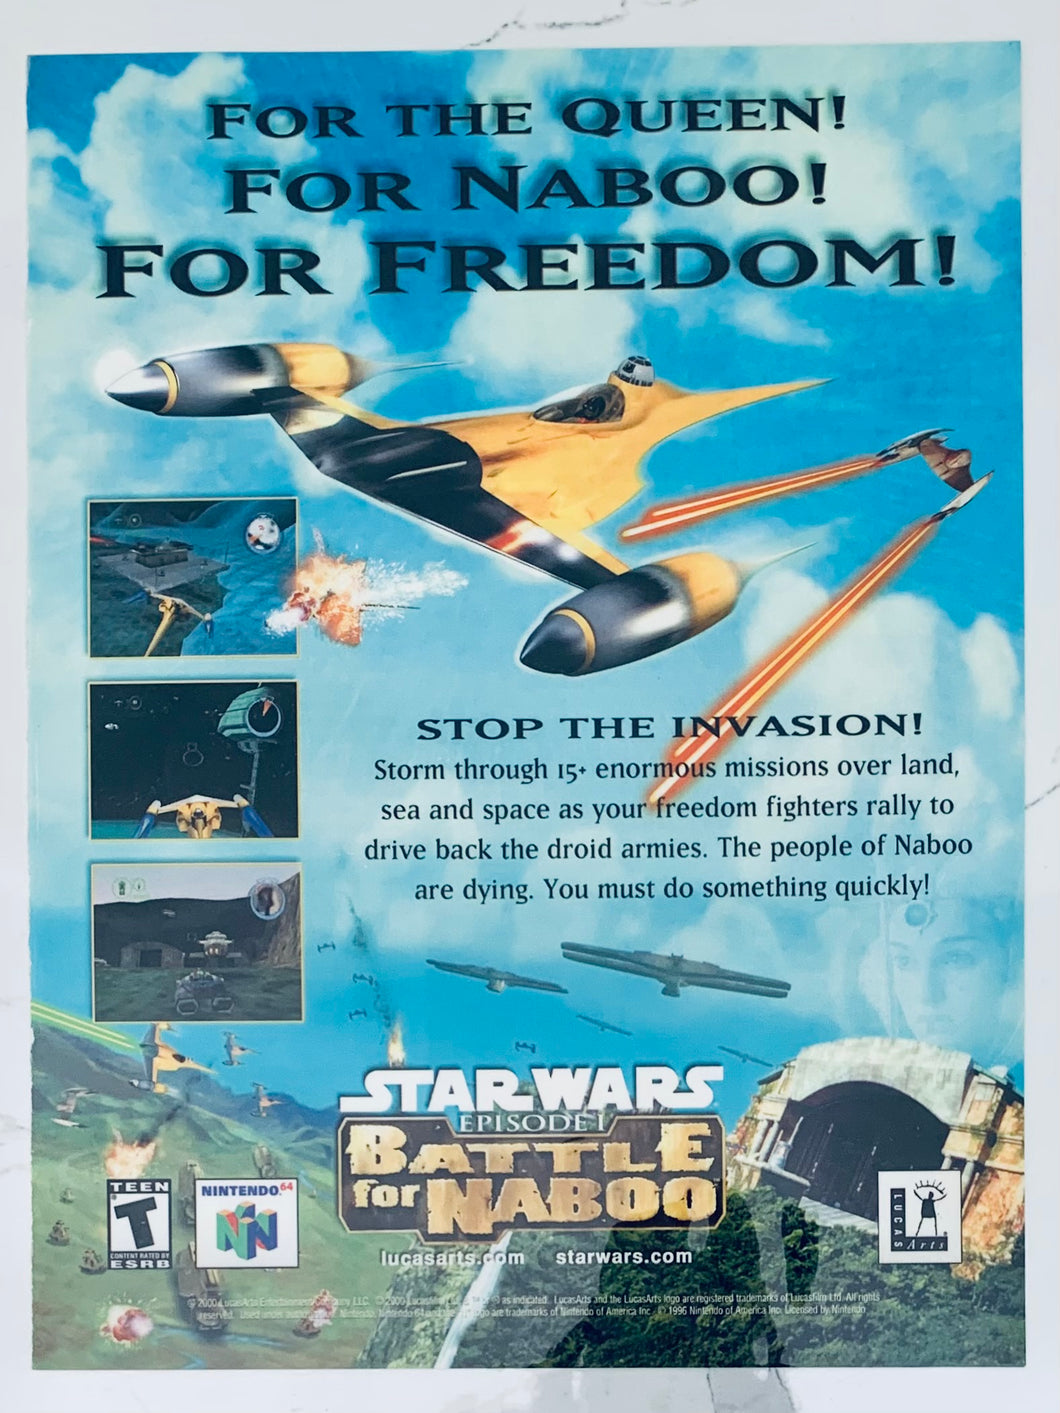 Star Wars Episode I: Battle for Naboo - N64 - Original Vintage Advertisement - Print Ads - Laminated A4 Poster